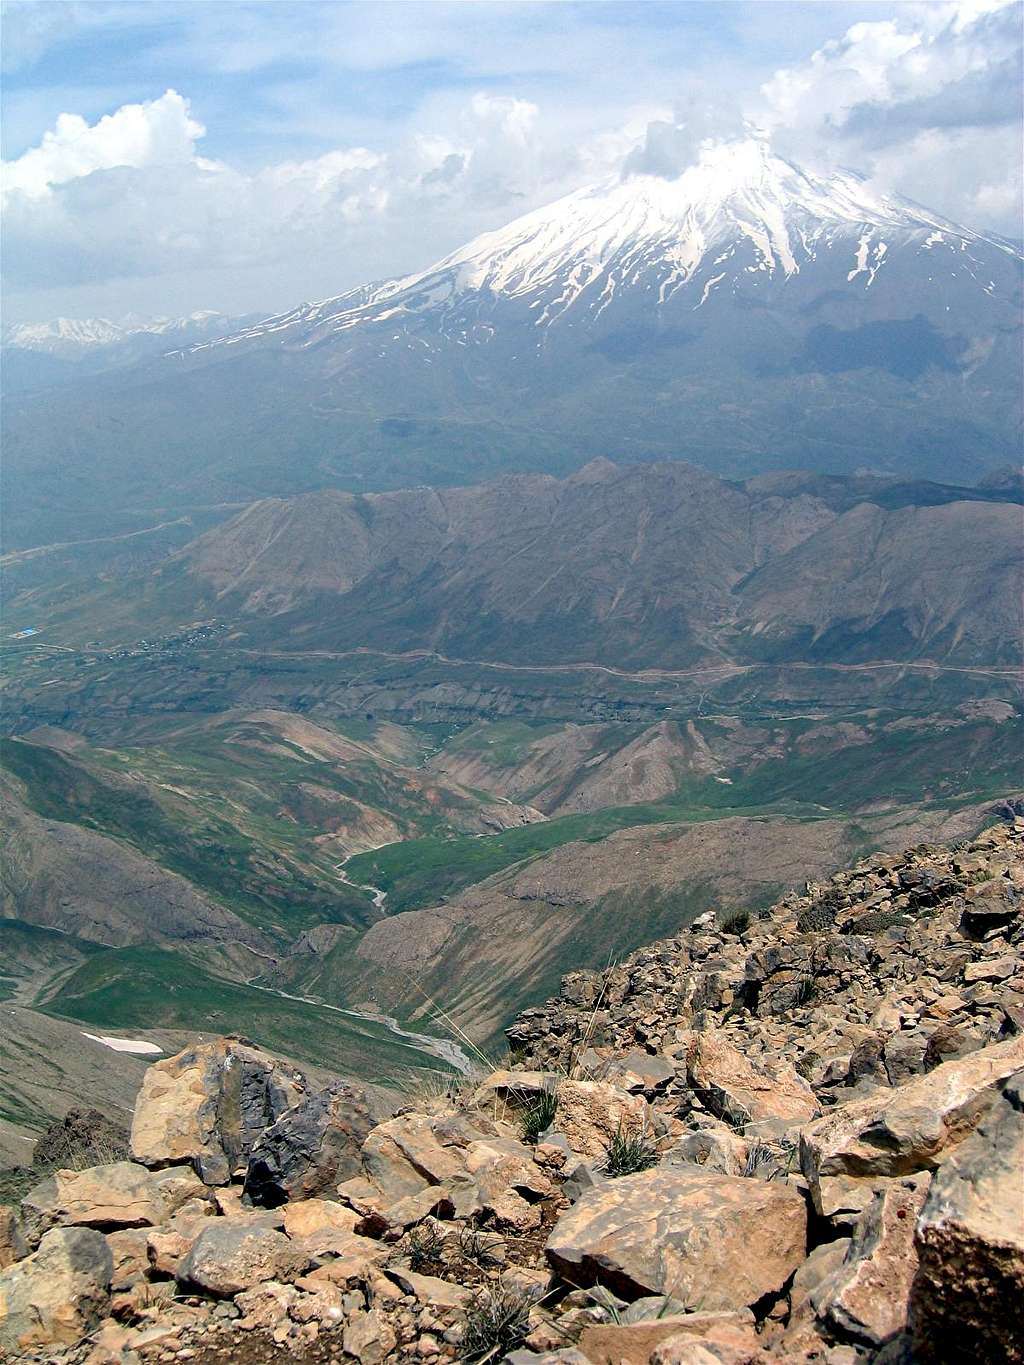 View of Mt. Damavand